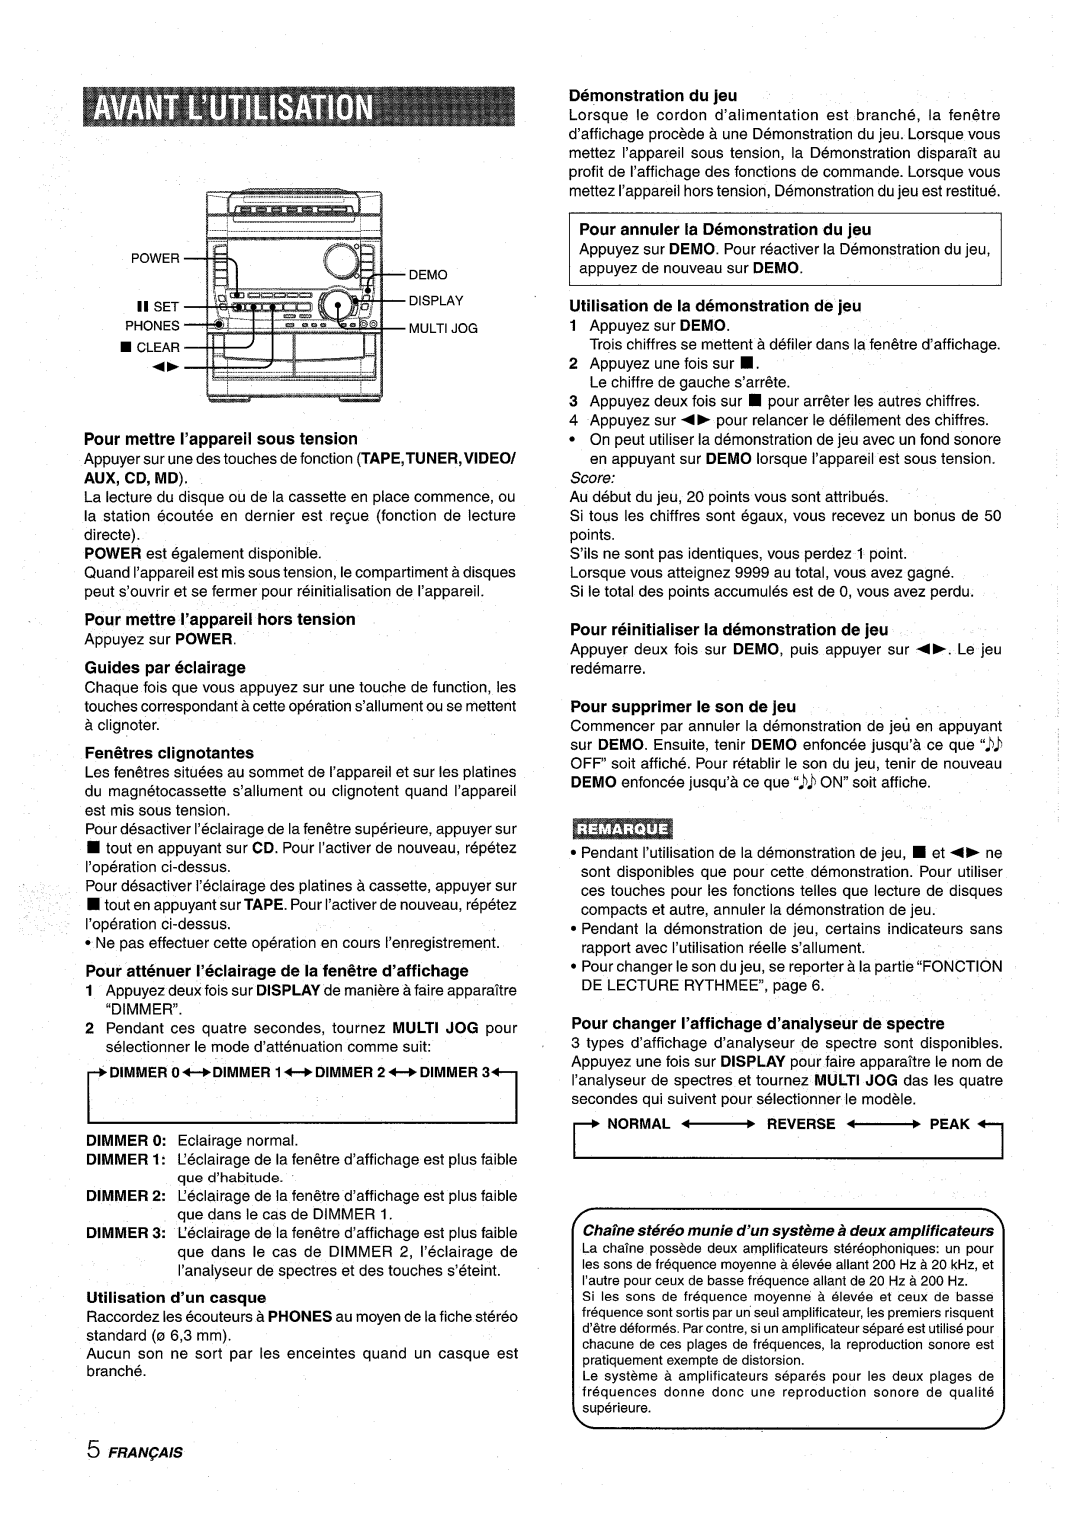 Sony NSX-A959 manual Pour mettre I’appareil sous tension, Pour mettre I’appareil hors tension, Guides par eclairage 